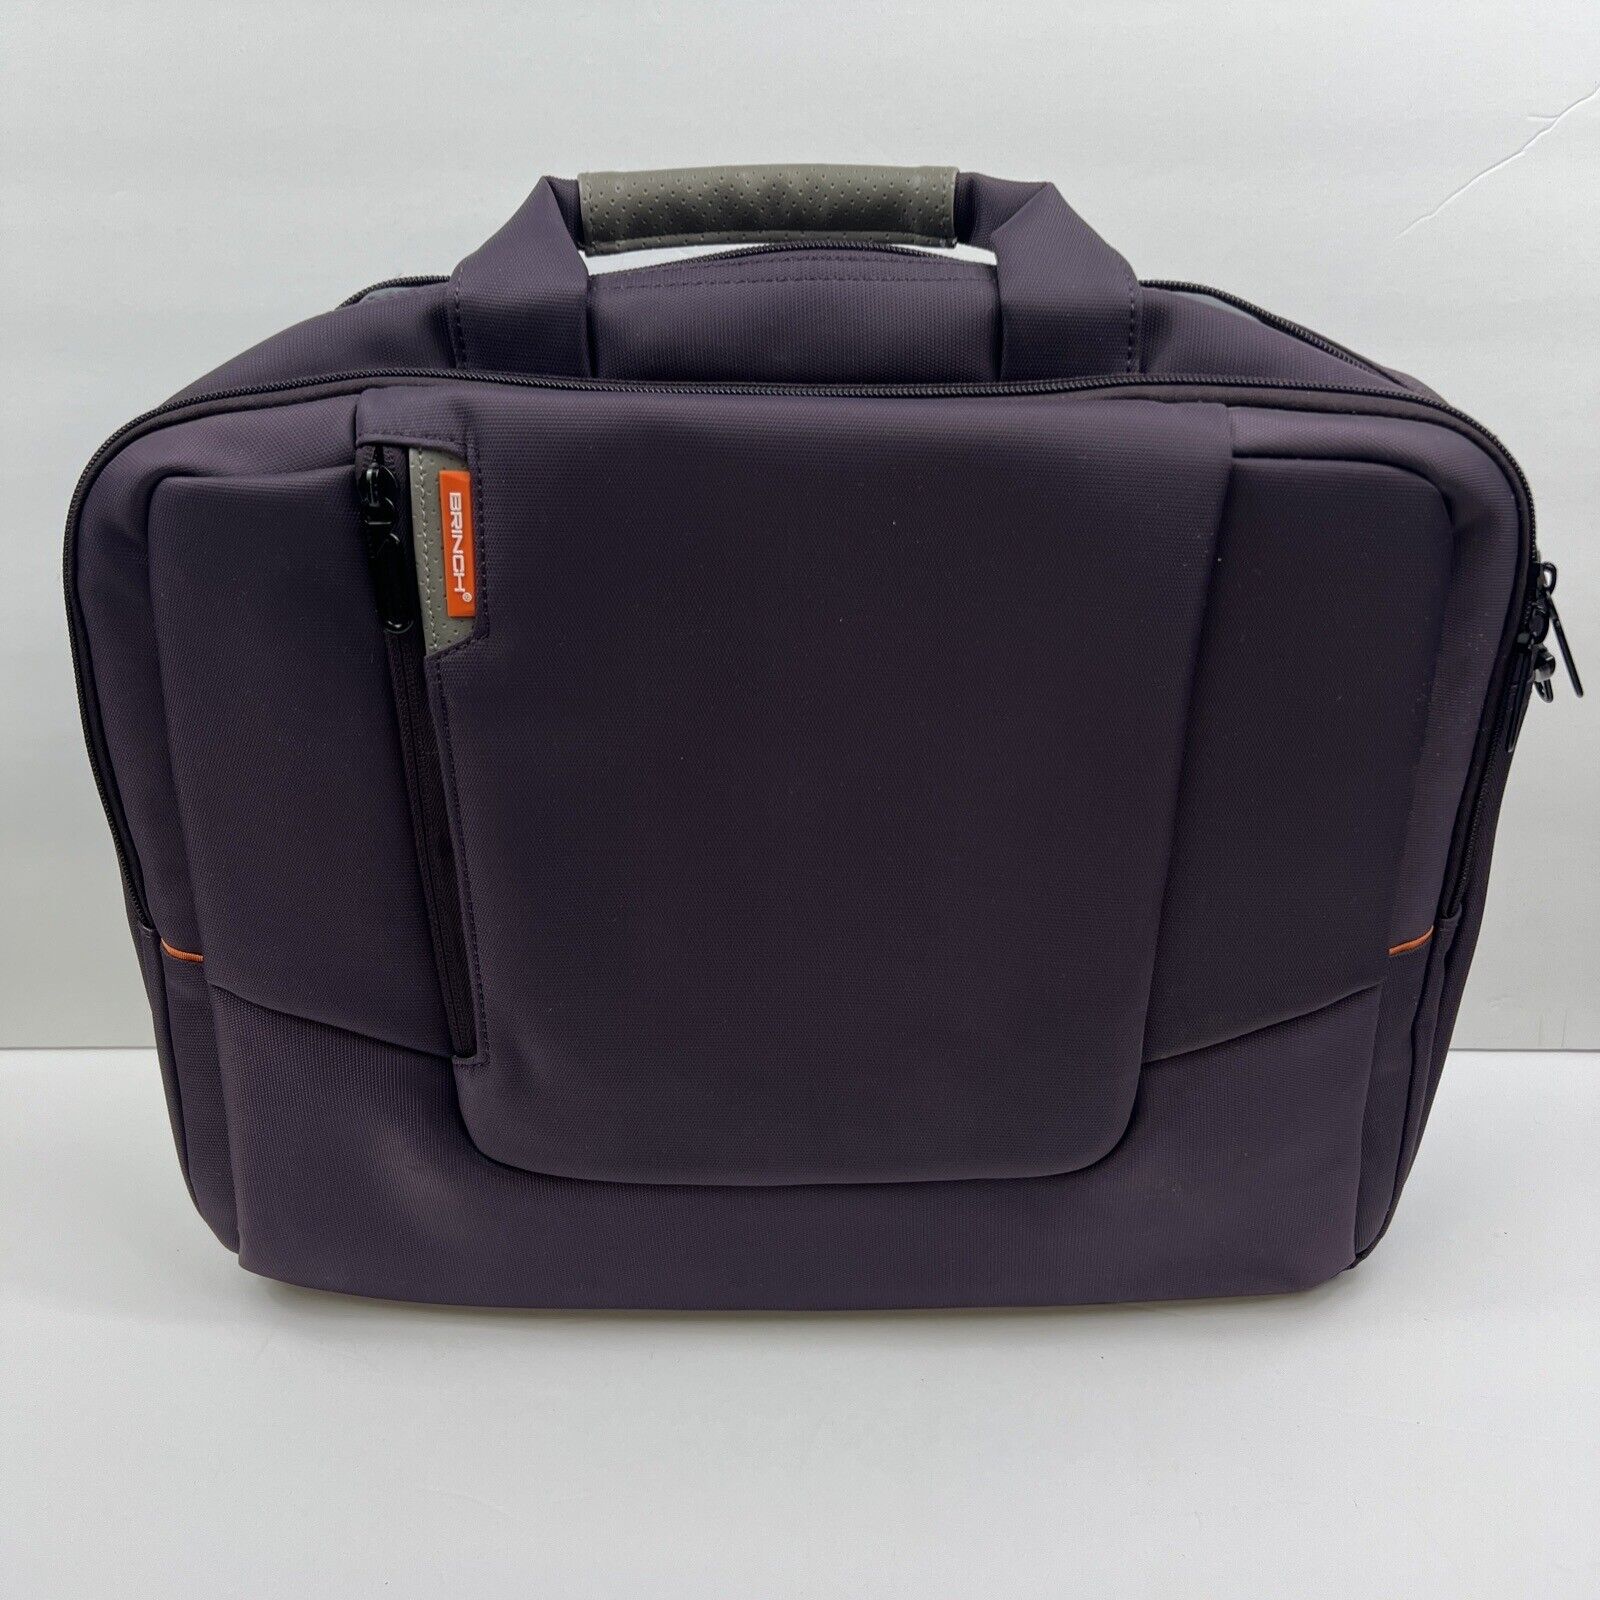 Brinch Laptop Bag Shoulder Strap Purple Nylon Fits Most 15-15.6” Computers